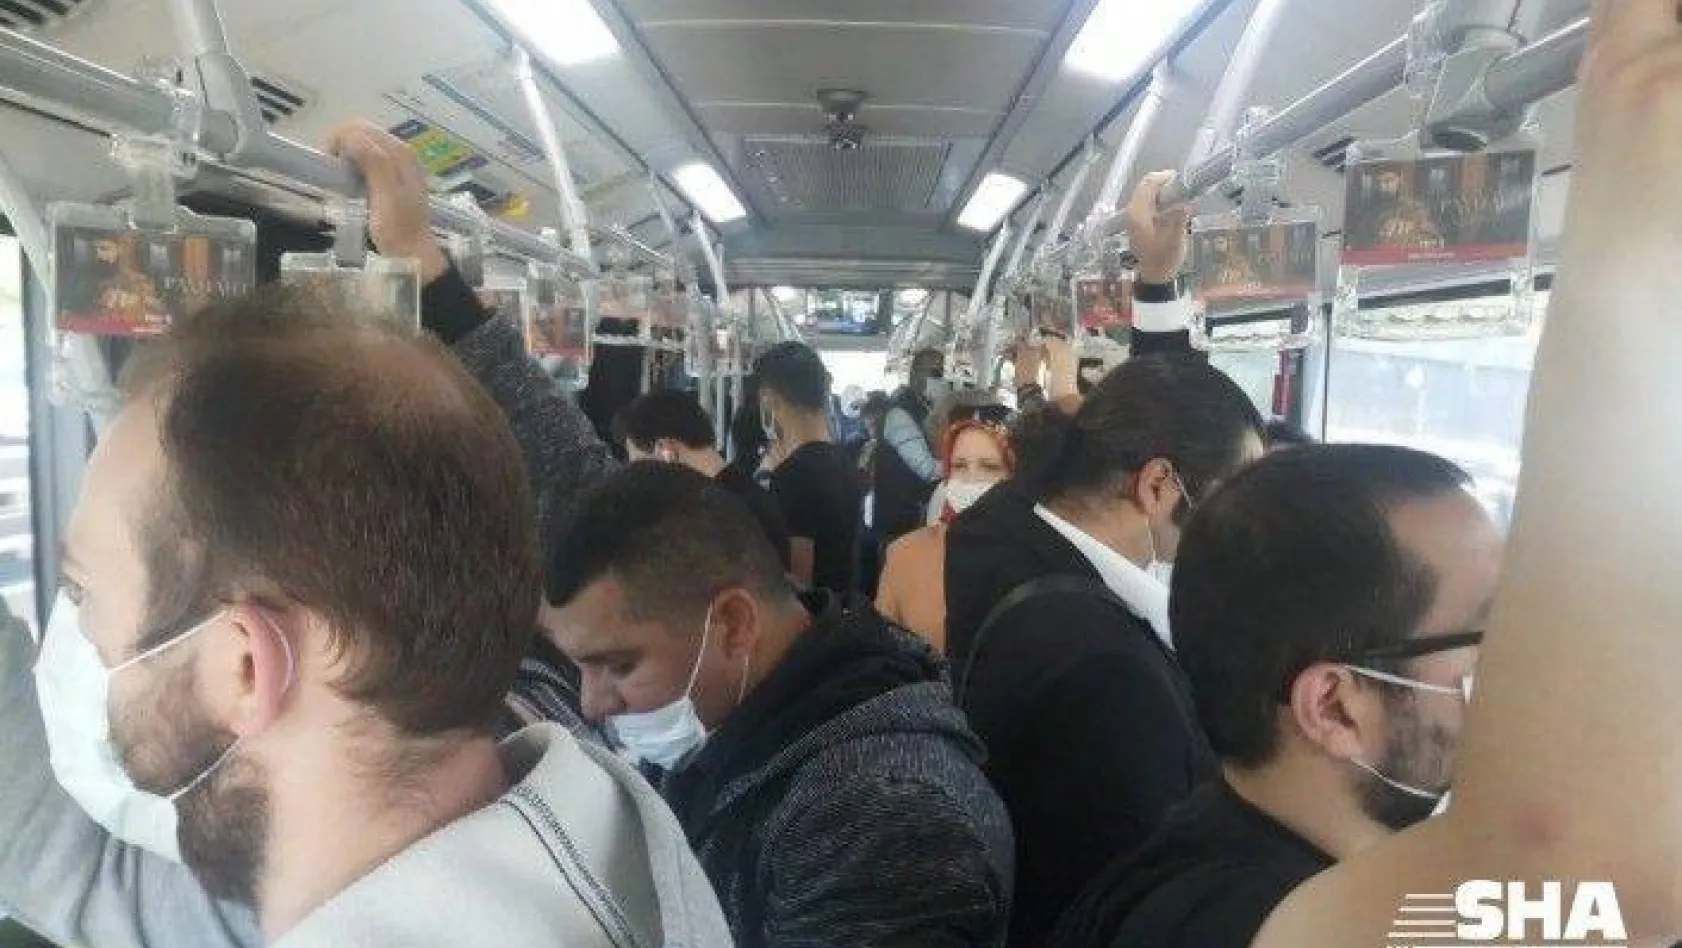 Metrobüs ve duraklarda sosyal mesafe hiçe sayıldı